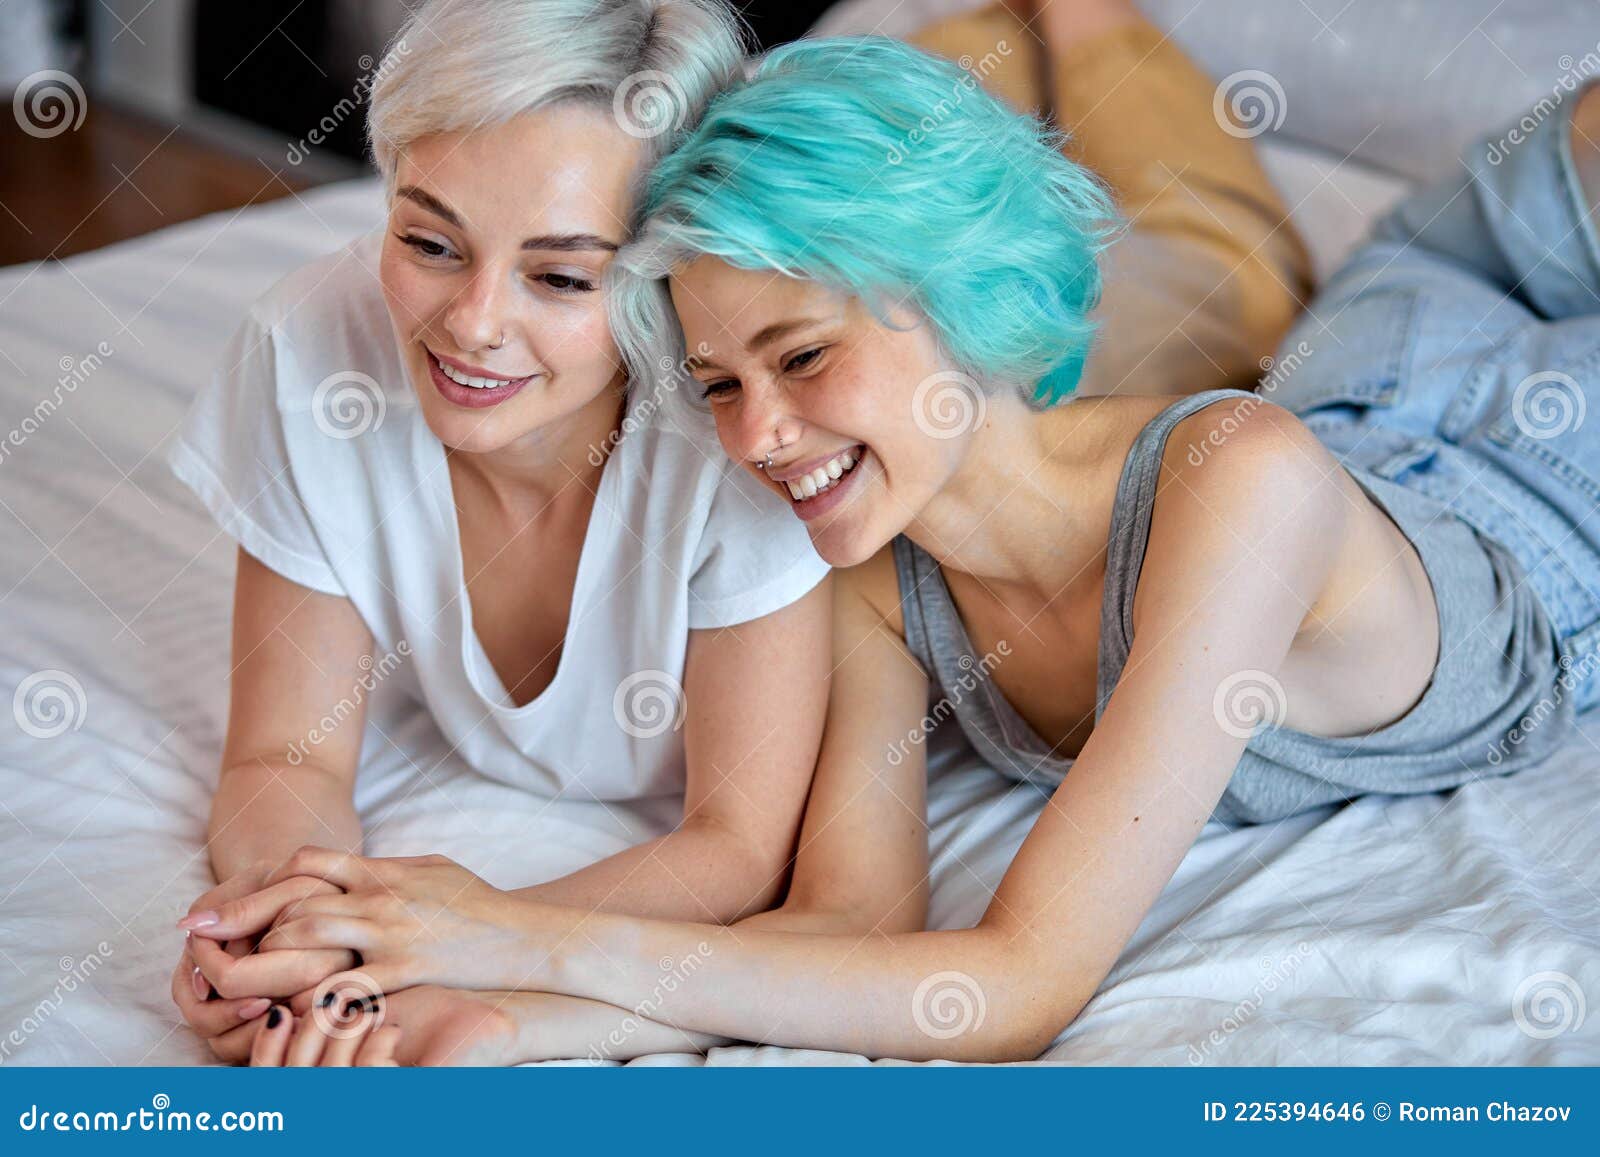 angelo spells add lesbian friends in bed photo